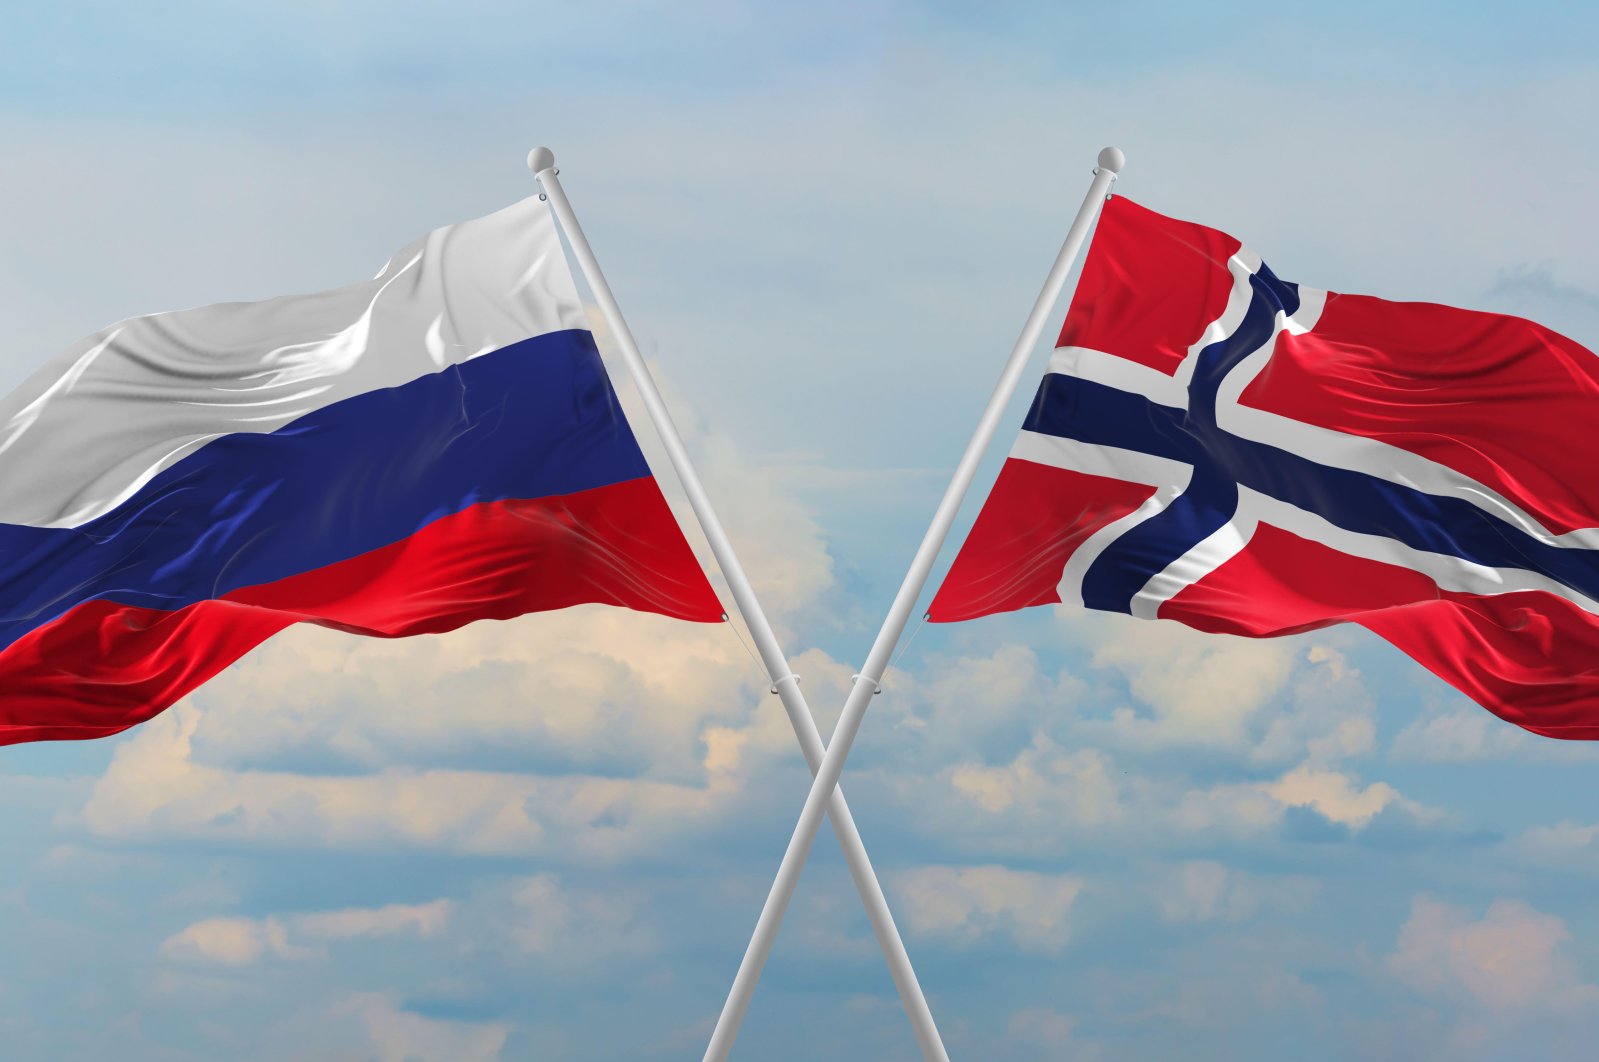 Moskow mengecam penghinaan konsul Norwegia yang menargetkan orang Rusia